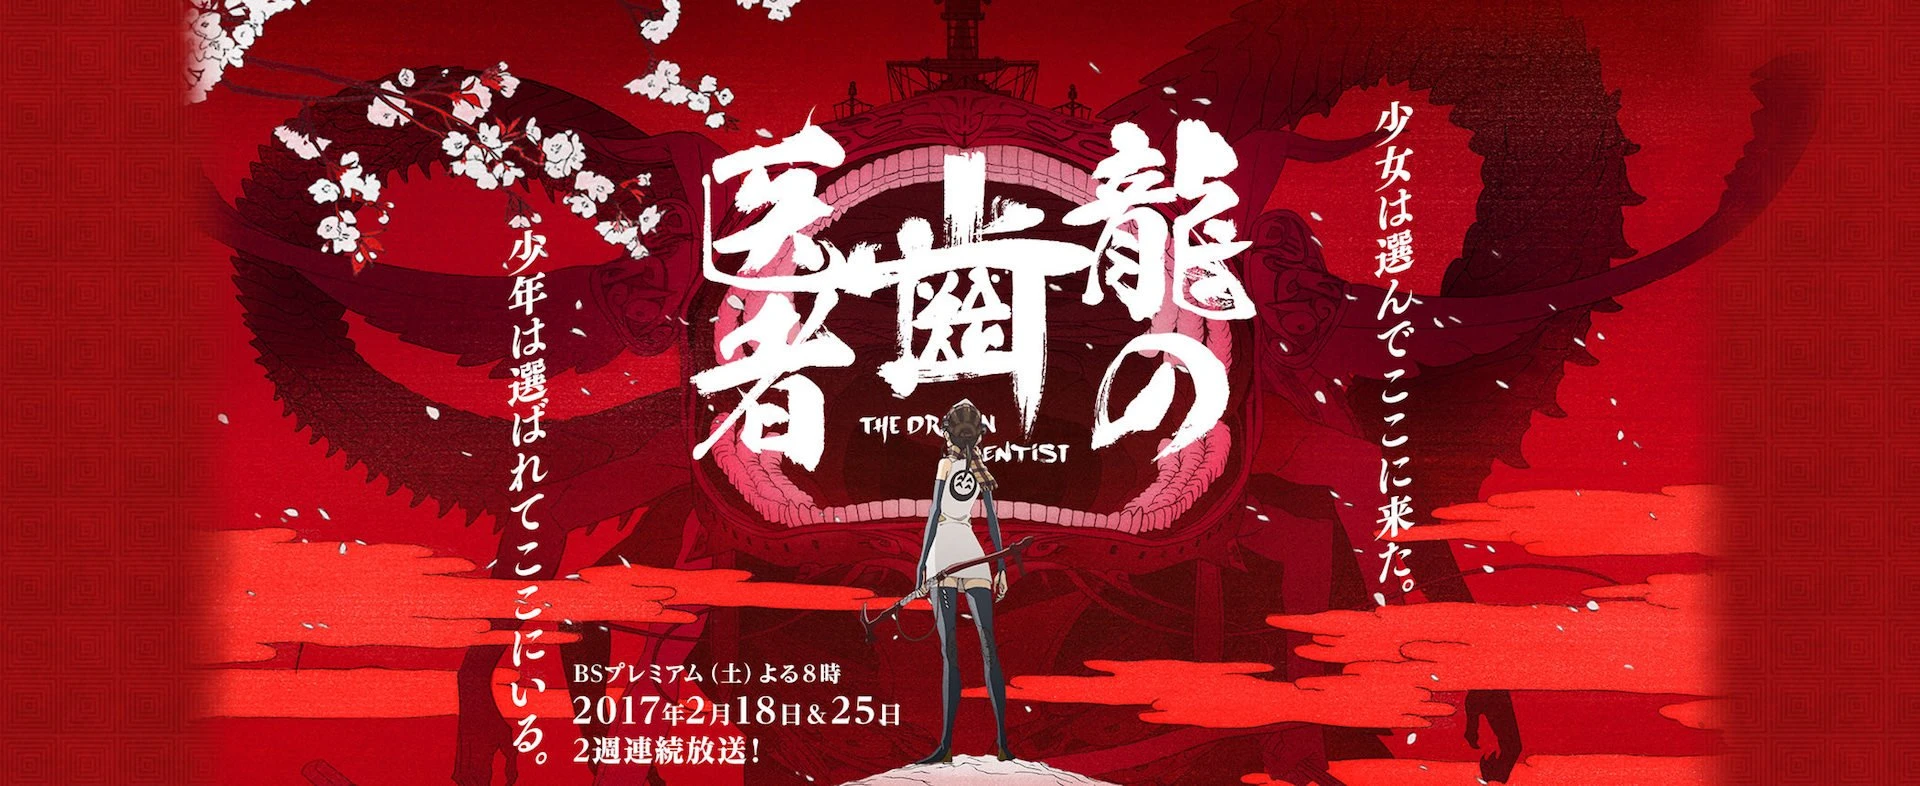 スタジオカラー初TVアニメ『龍の歯医者』 NHKで2週連続放送決定